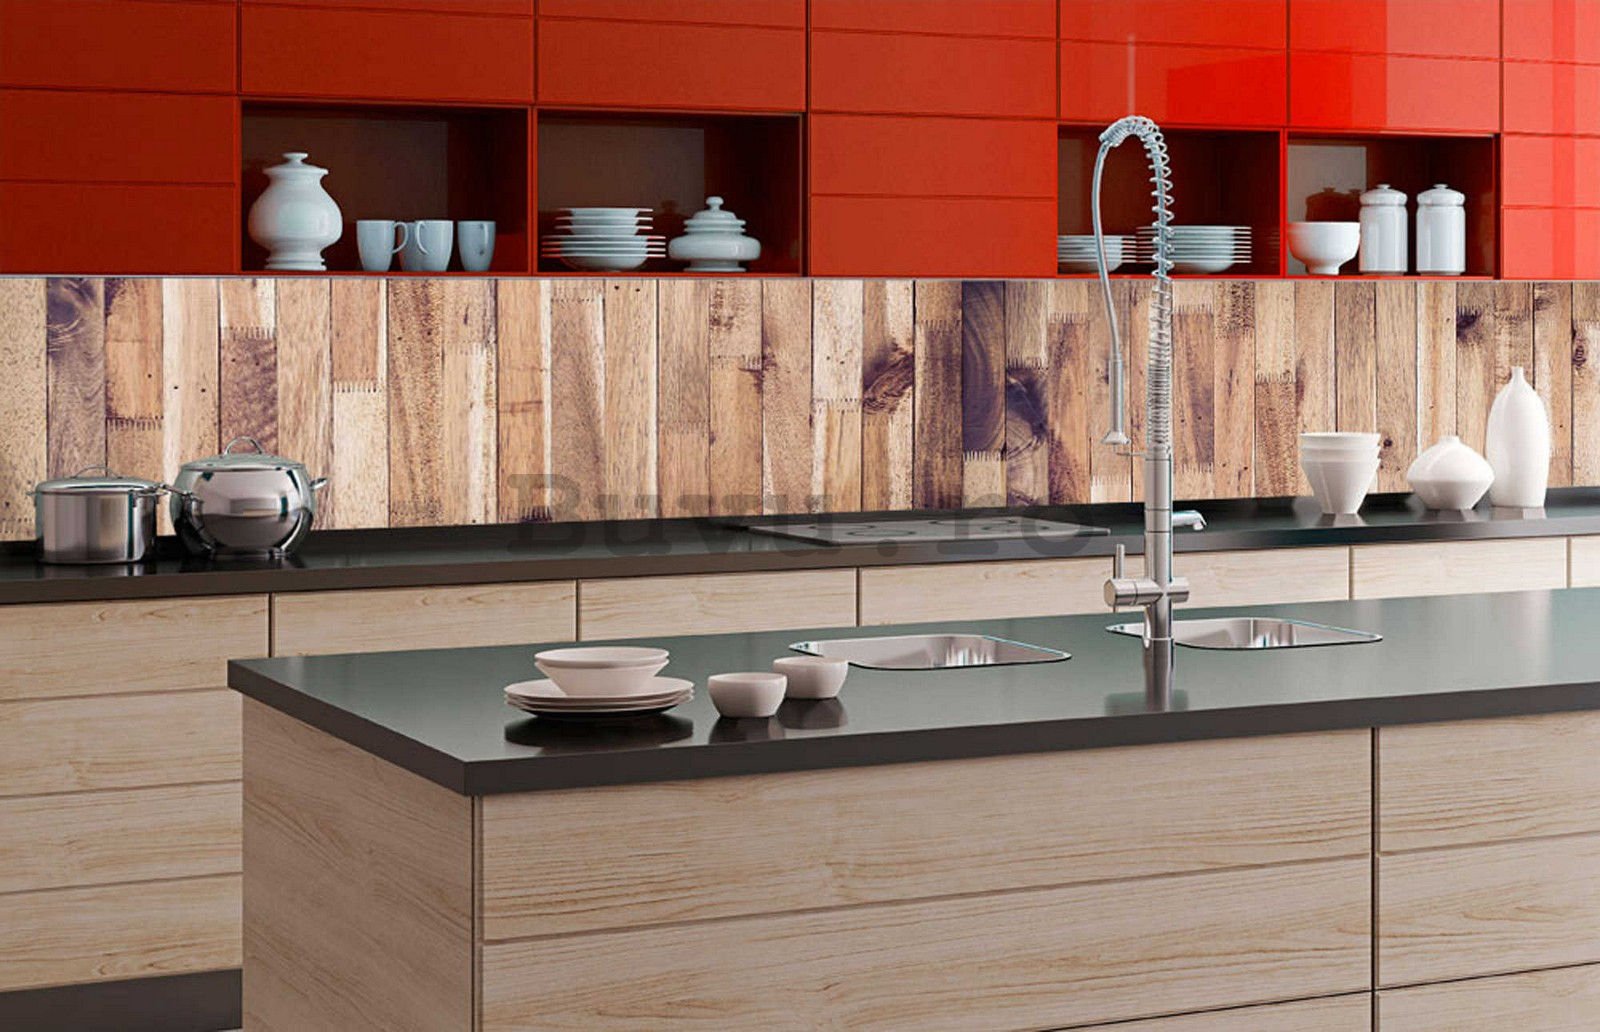 Tapet autoadeziv lavabil pentru bucătărie - Perete de lemn, 350x60 cm